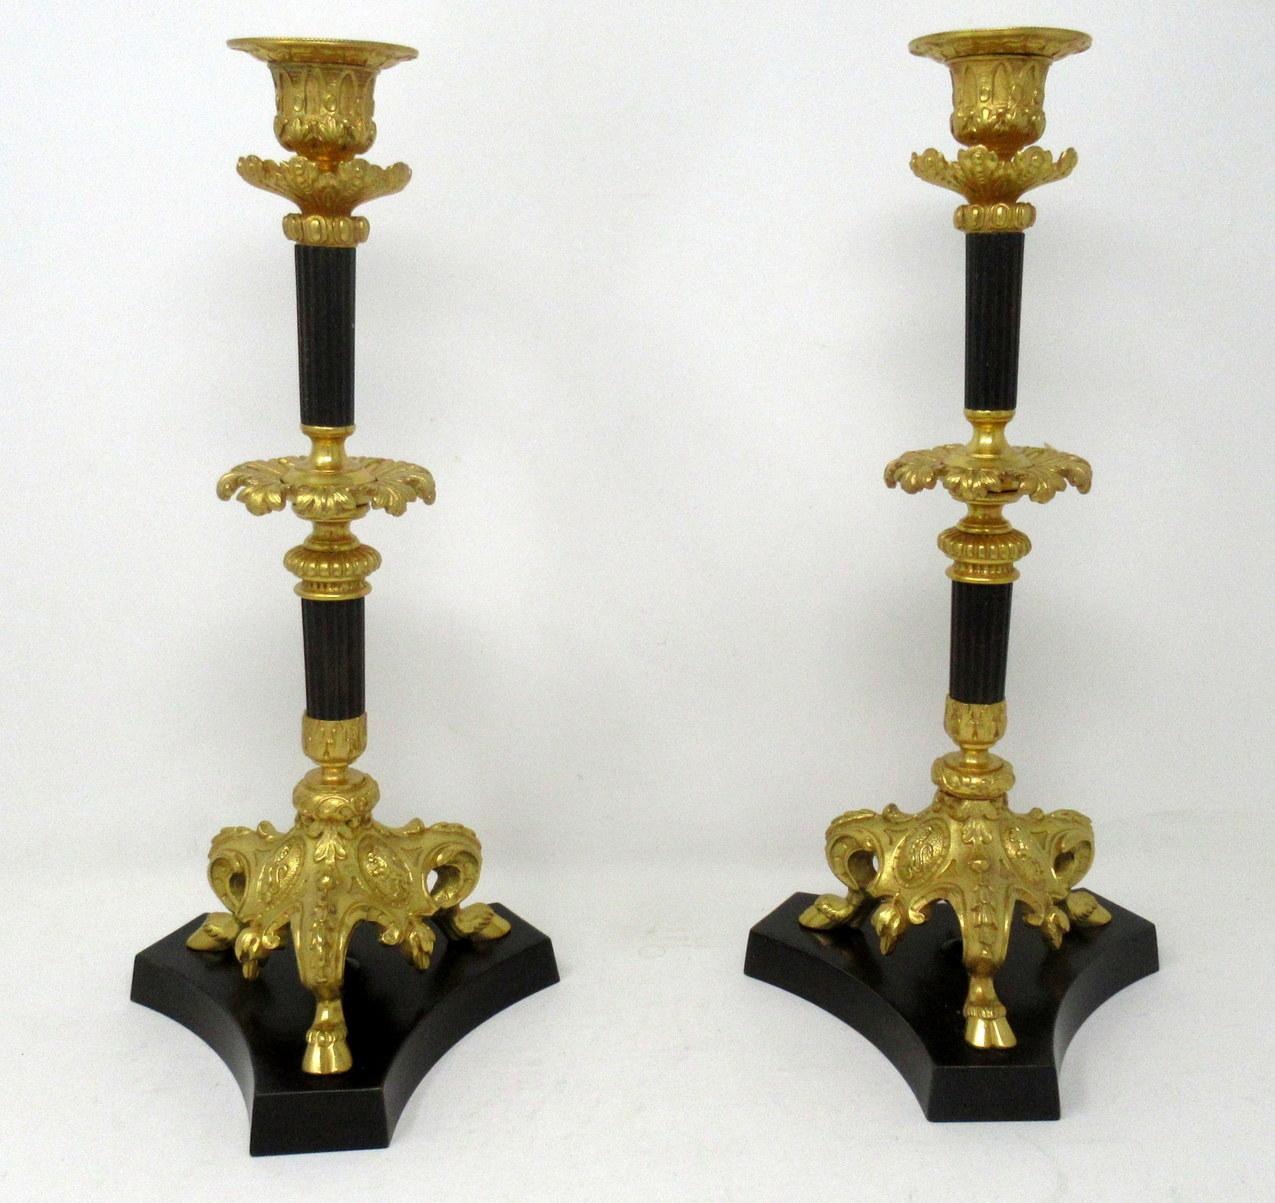 Cast Antique Pair of French Ormolu Gilt Bronze Dore Twin Arm Candelabra Candlesticks